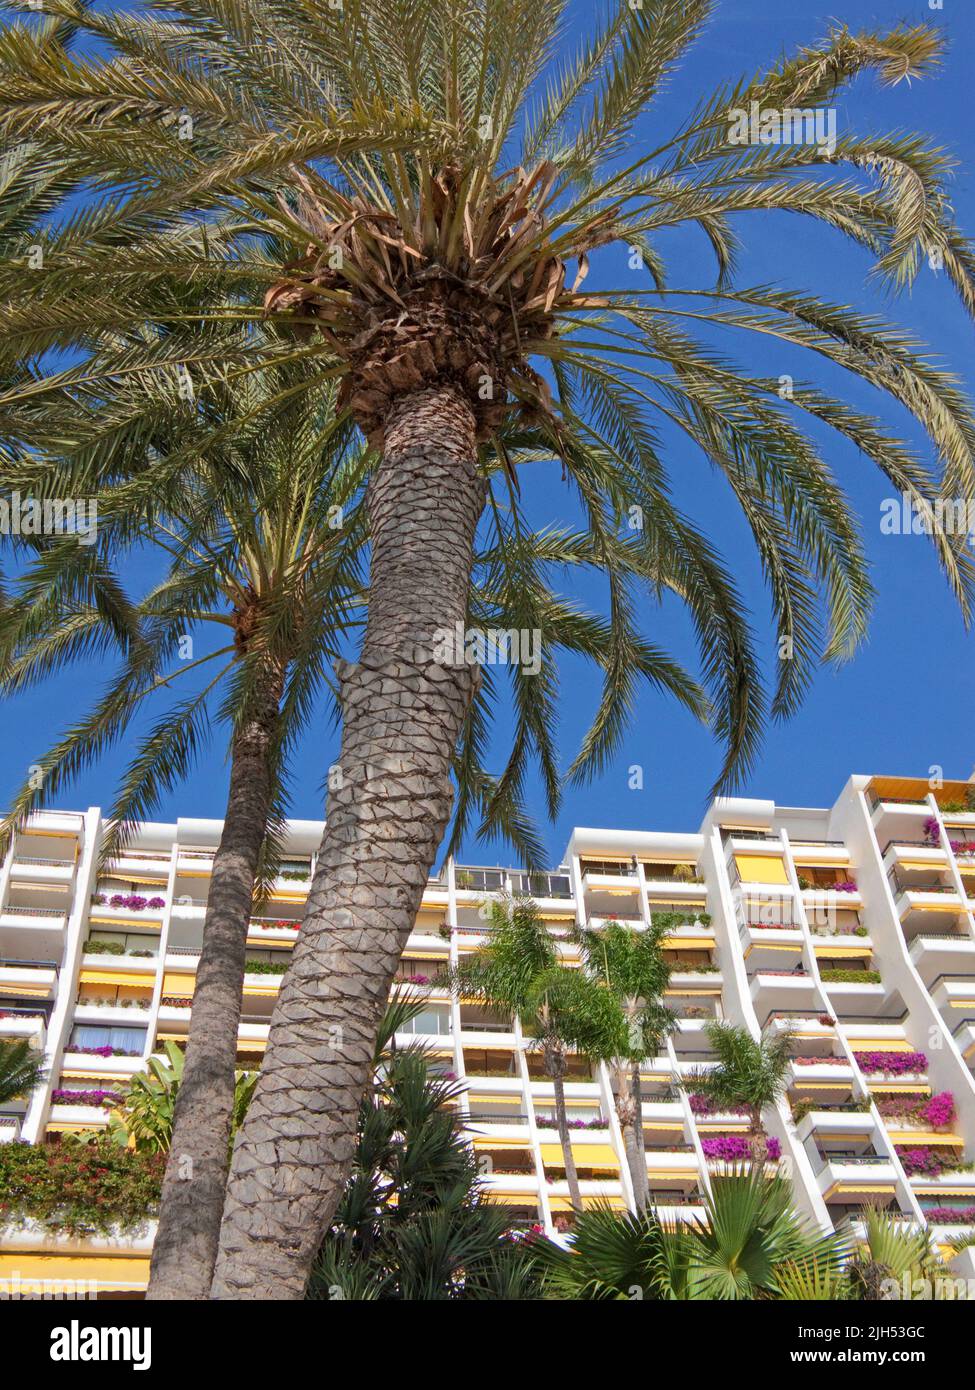 Palmiers en face de l'hôtel Aquamarina, station de vacances à Anfi del Mar, Arguineguin, Grand Canary, îles Canaries, Espagne, Europe Banque D'Images